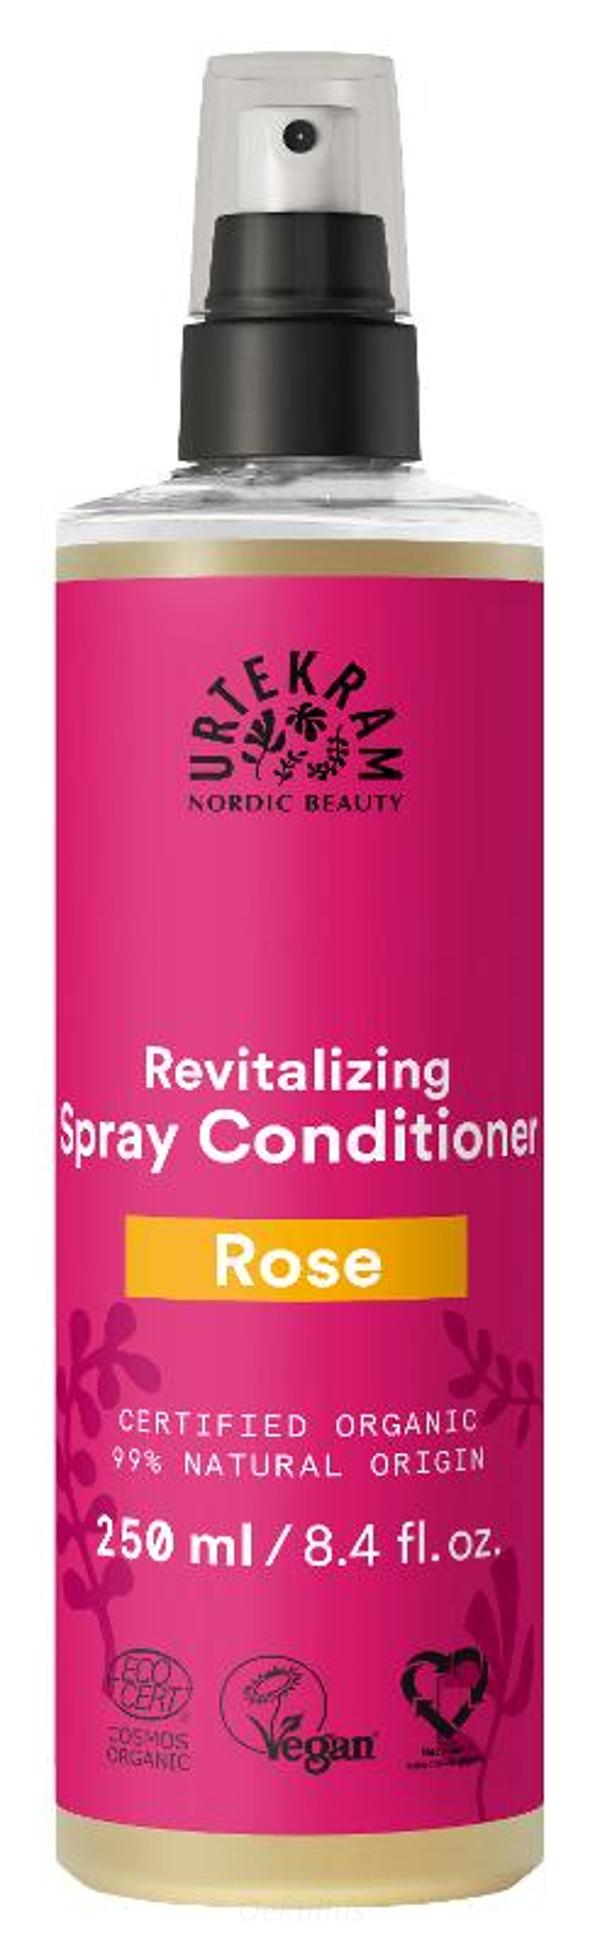 Produktfoto zu Spray Conditioner Rose